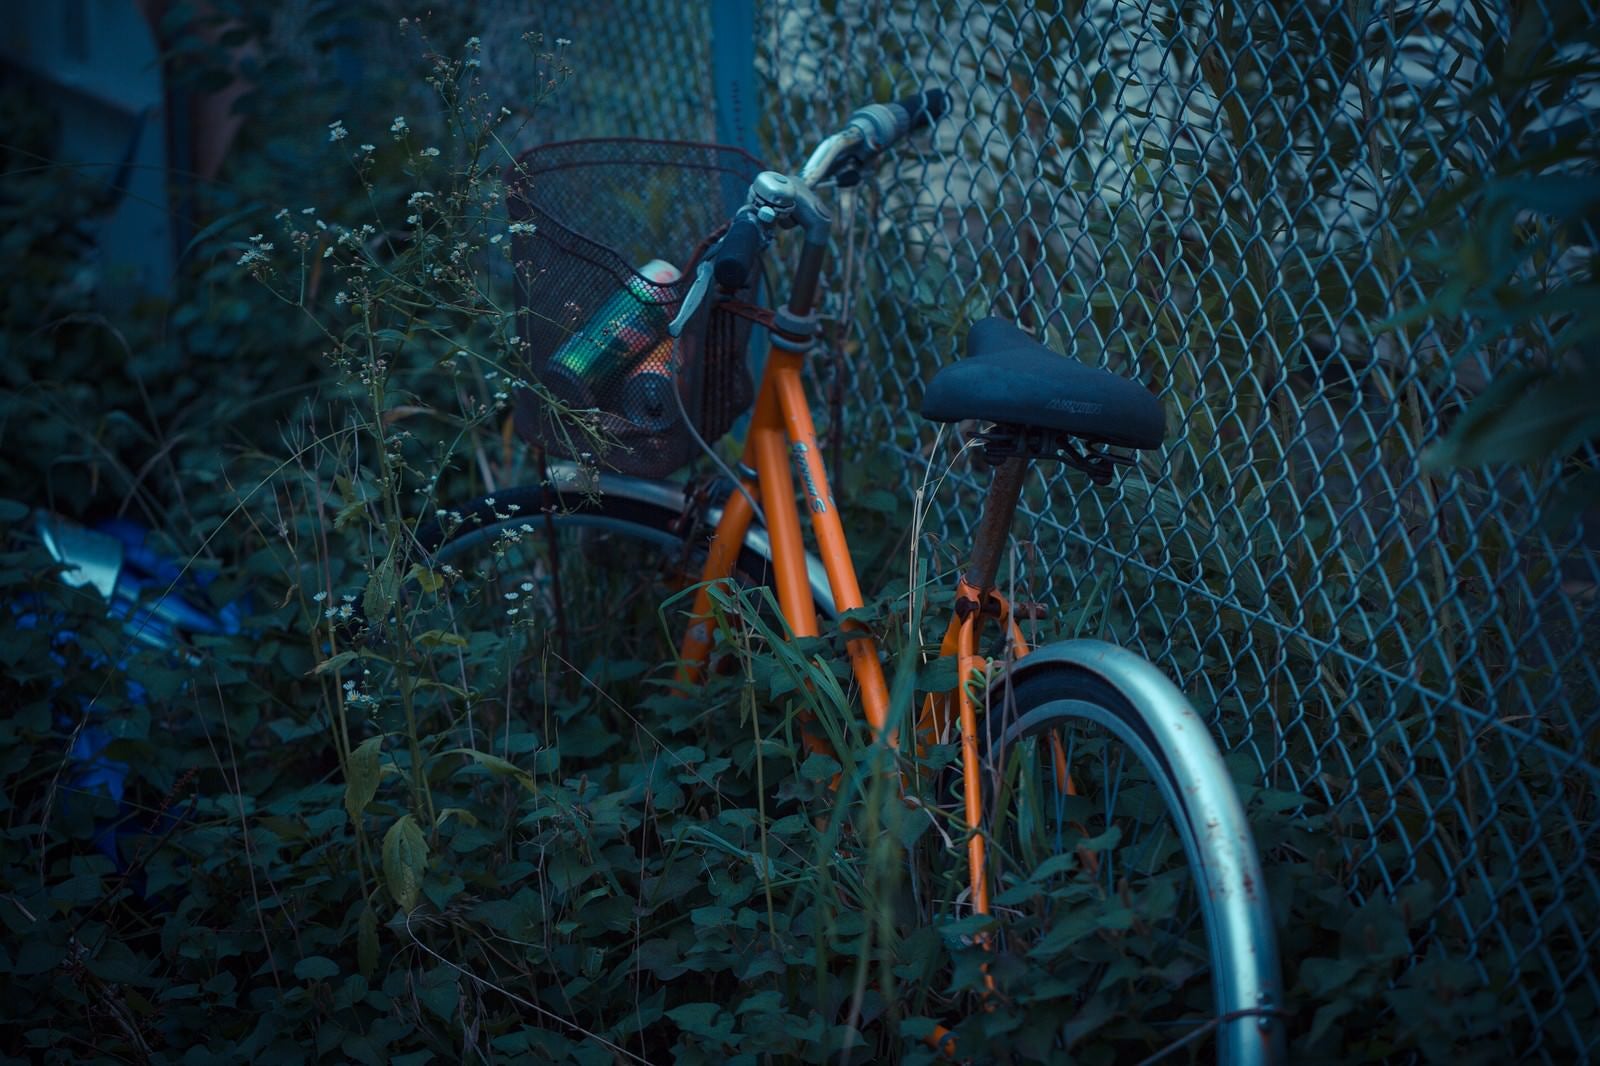 「置き捨てられた自転車」の写真